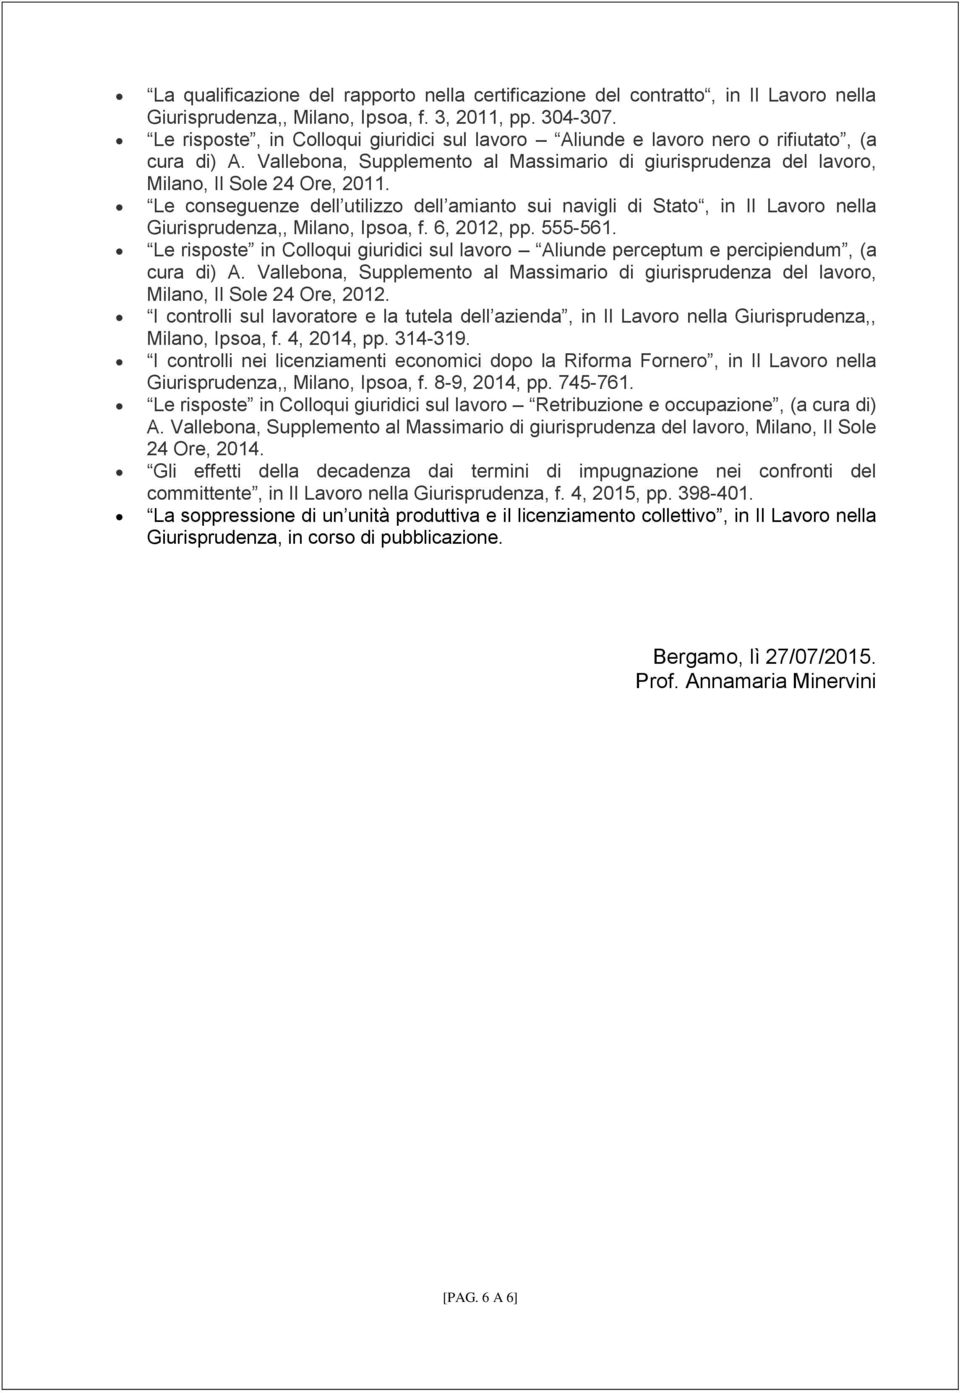 Le conseguenze dell utilizzo dell amianto sui navigli di Stato, in Il Lavoro nella Giurisprudenza,, Milano, Ipsoa, f. 6, 2012, pp. 555-561.